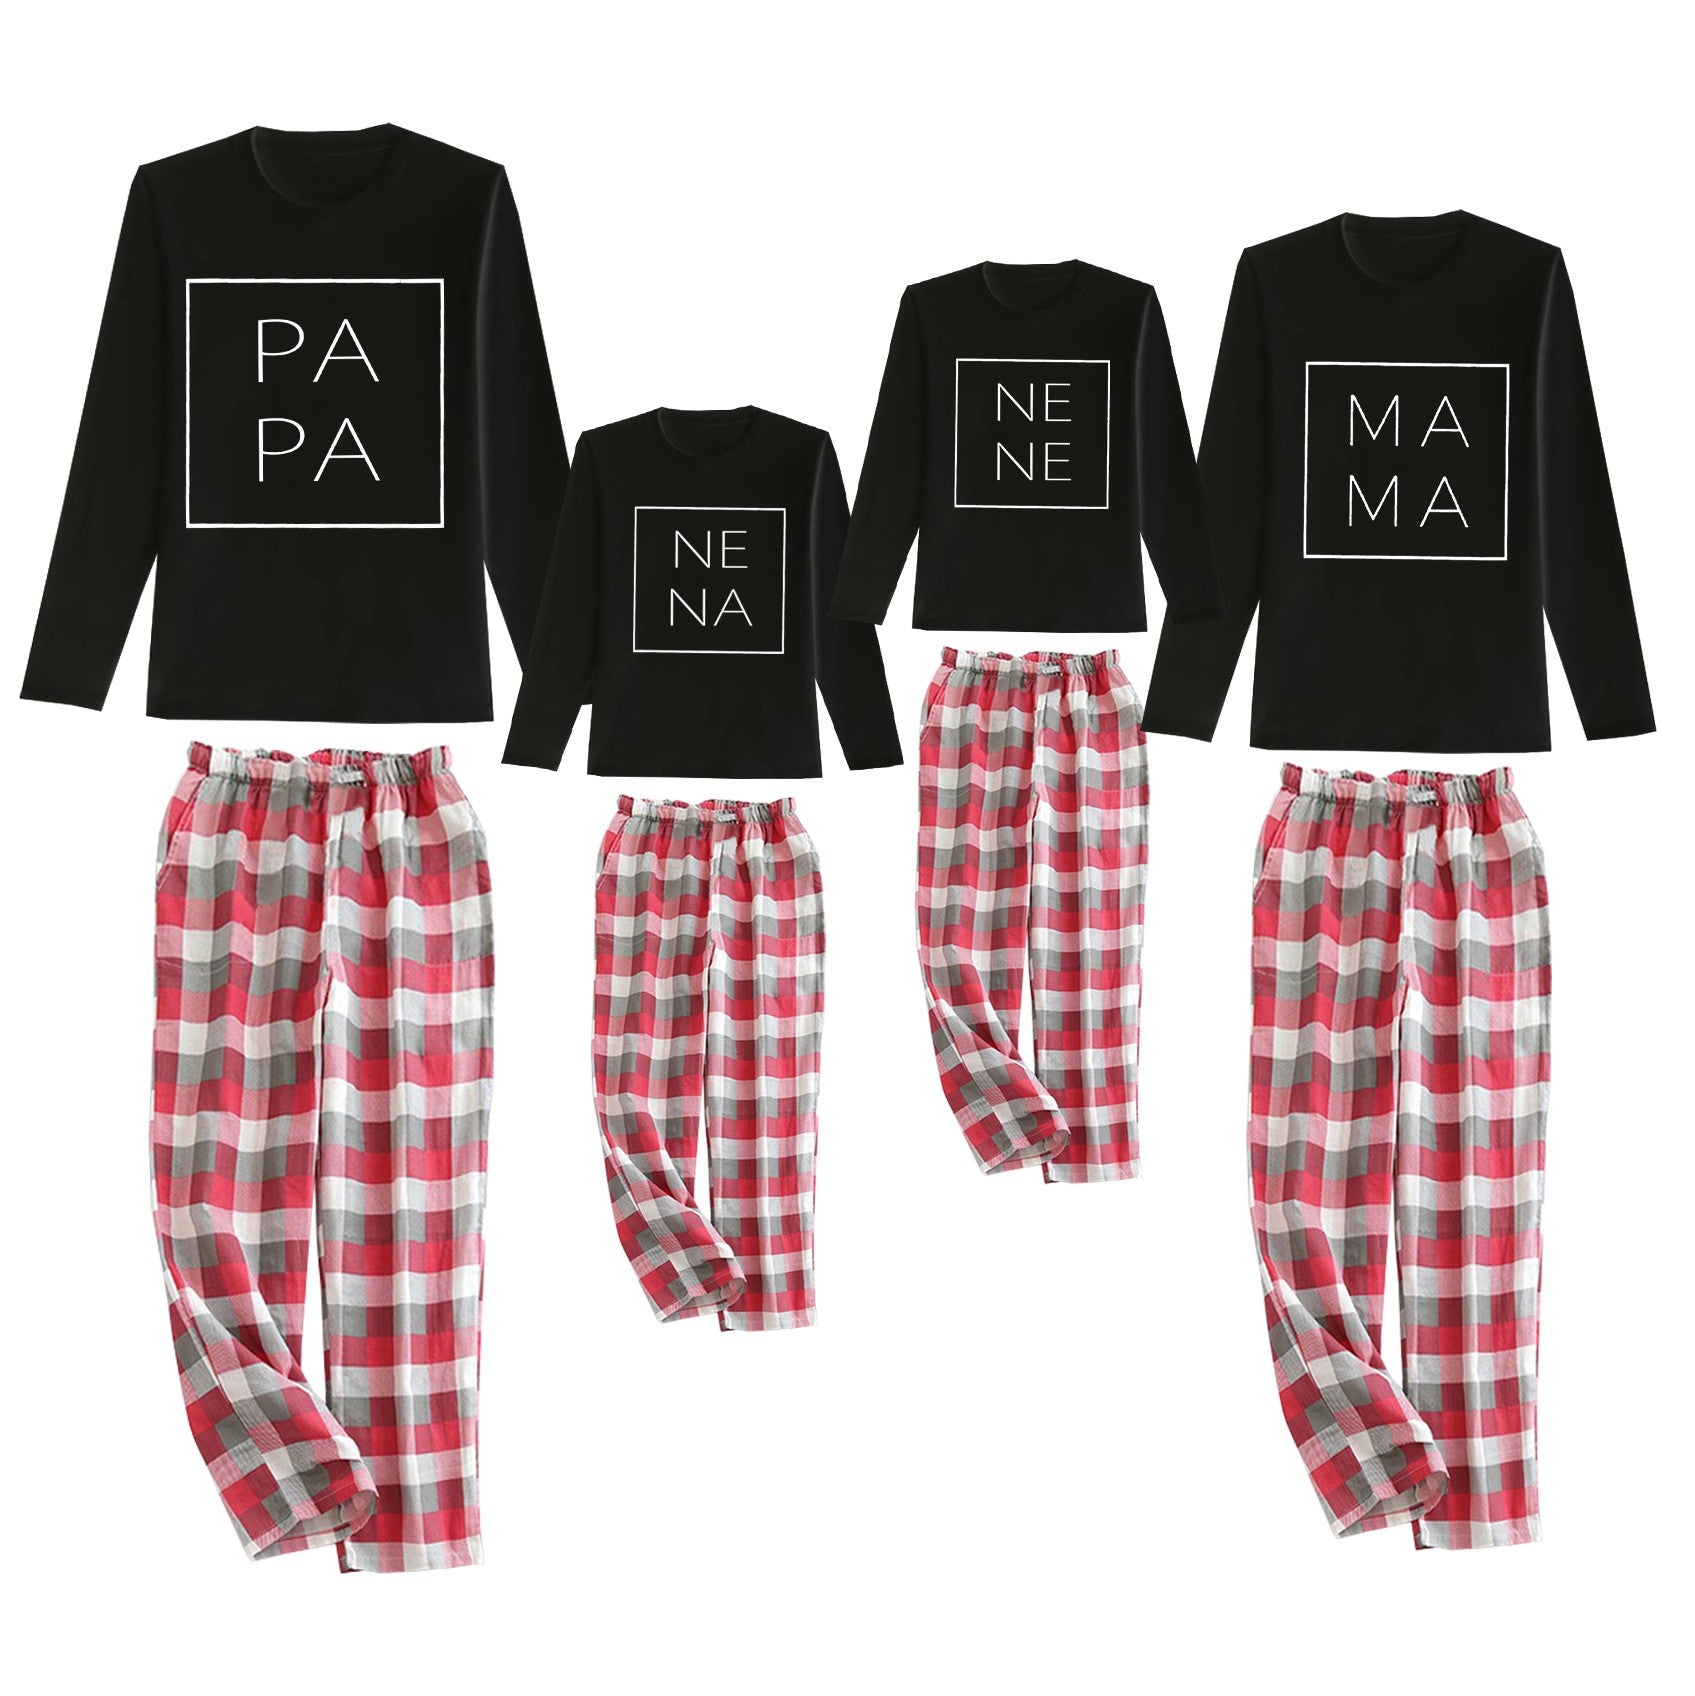 Pijama Family Experience camiseta negra y pantalón rojo letras blancas